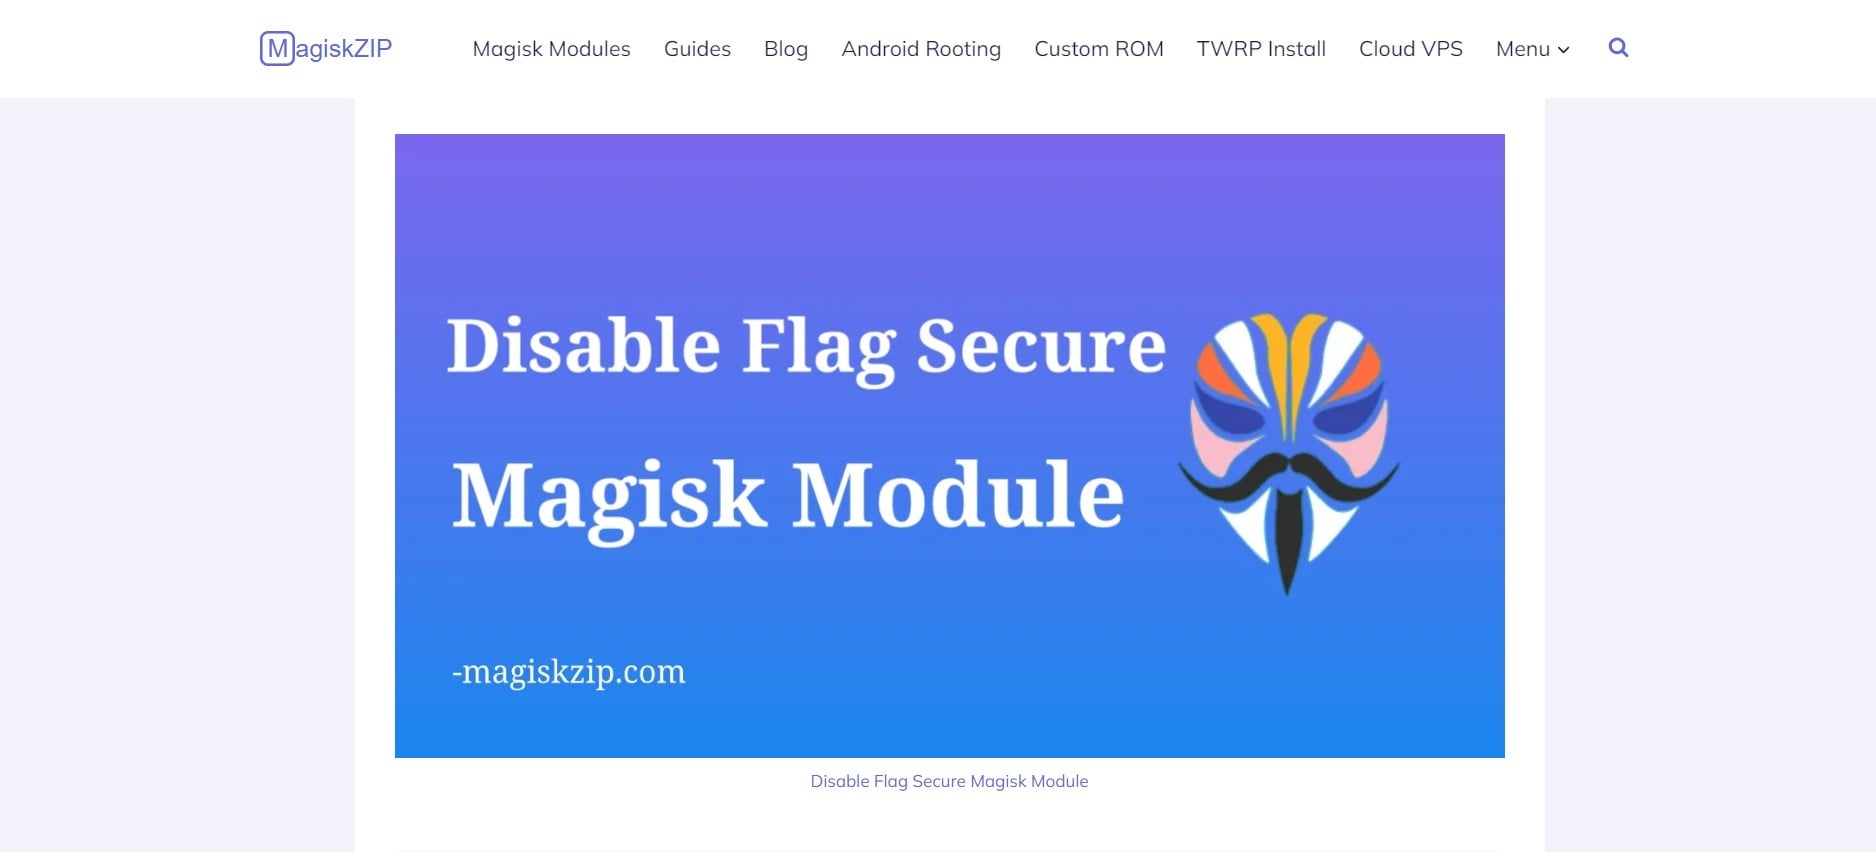 magiskzip disable flag secure module